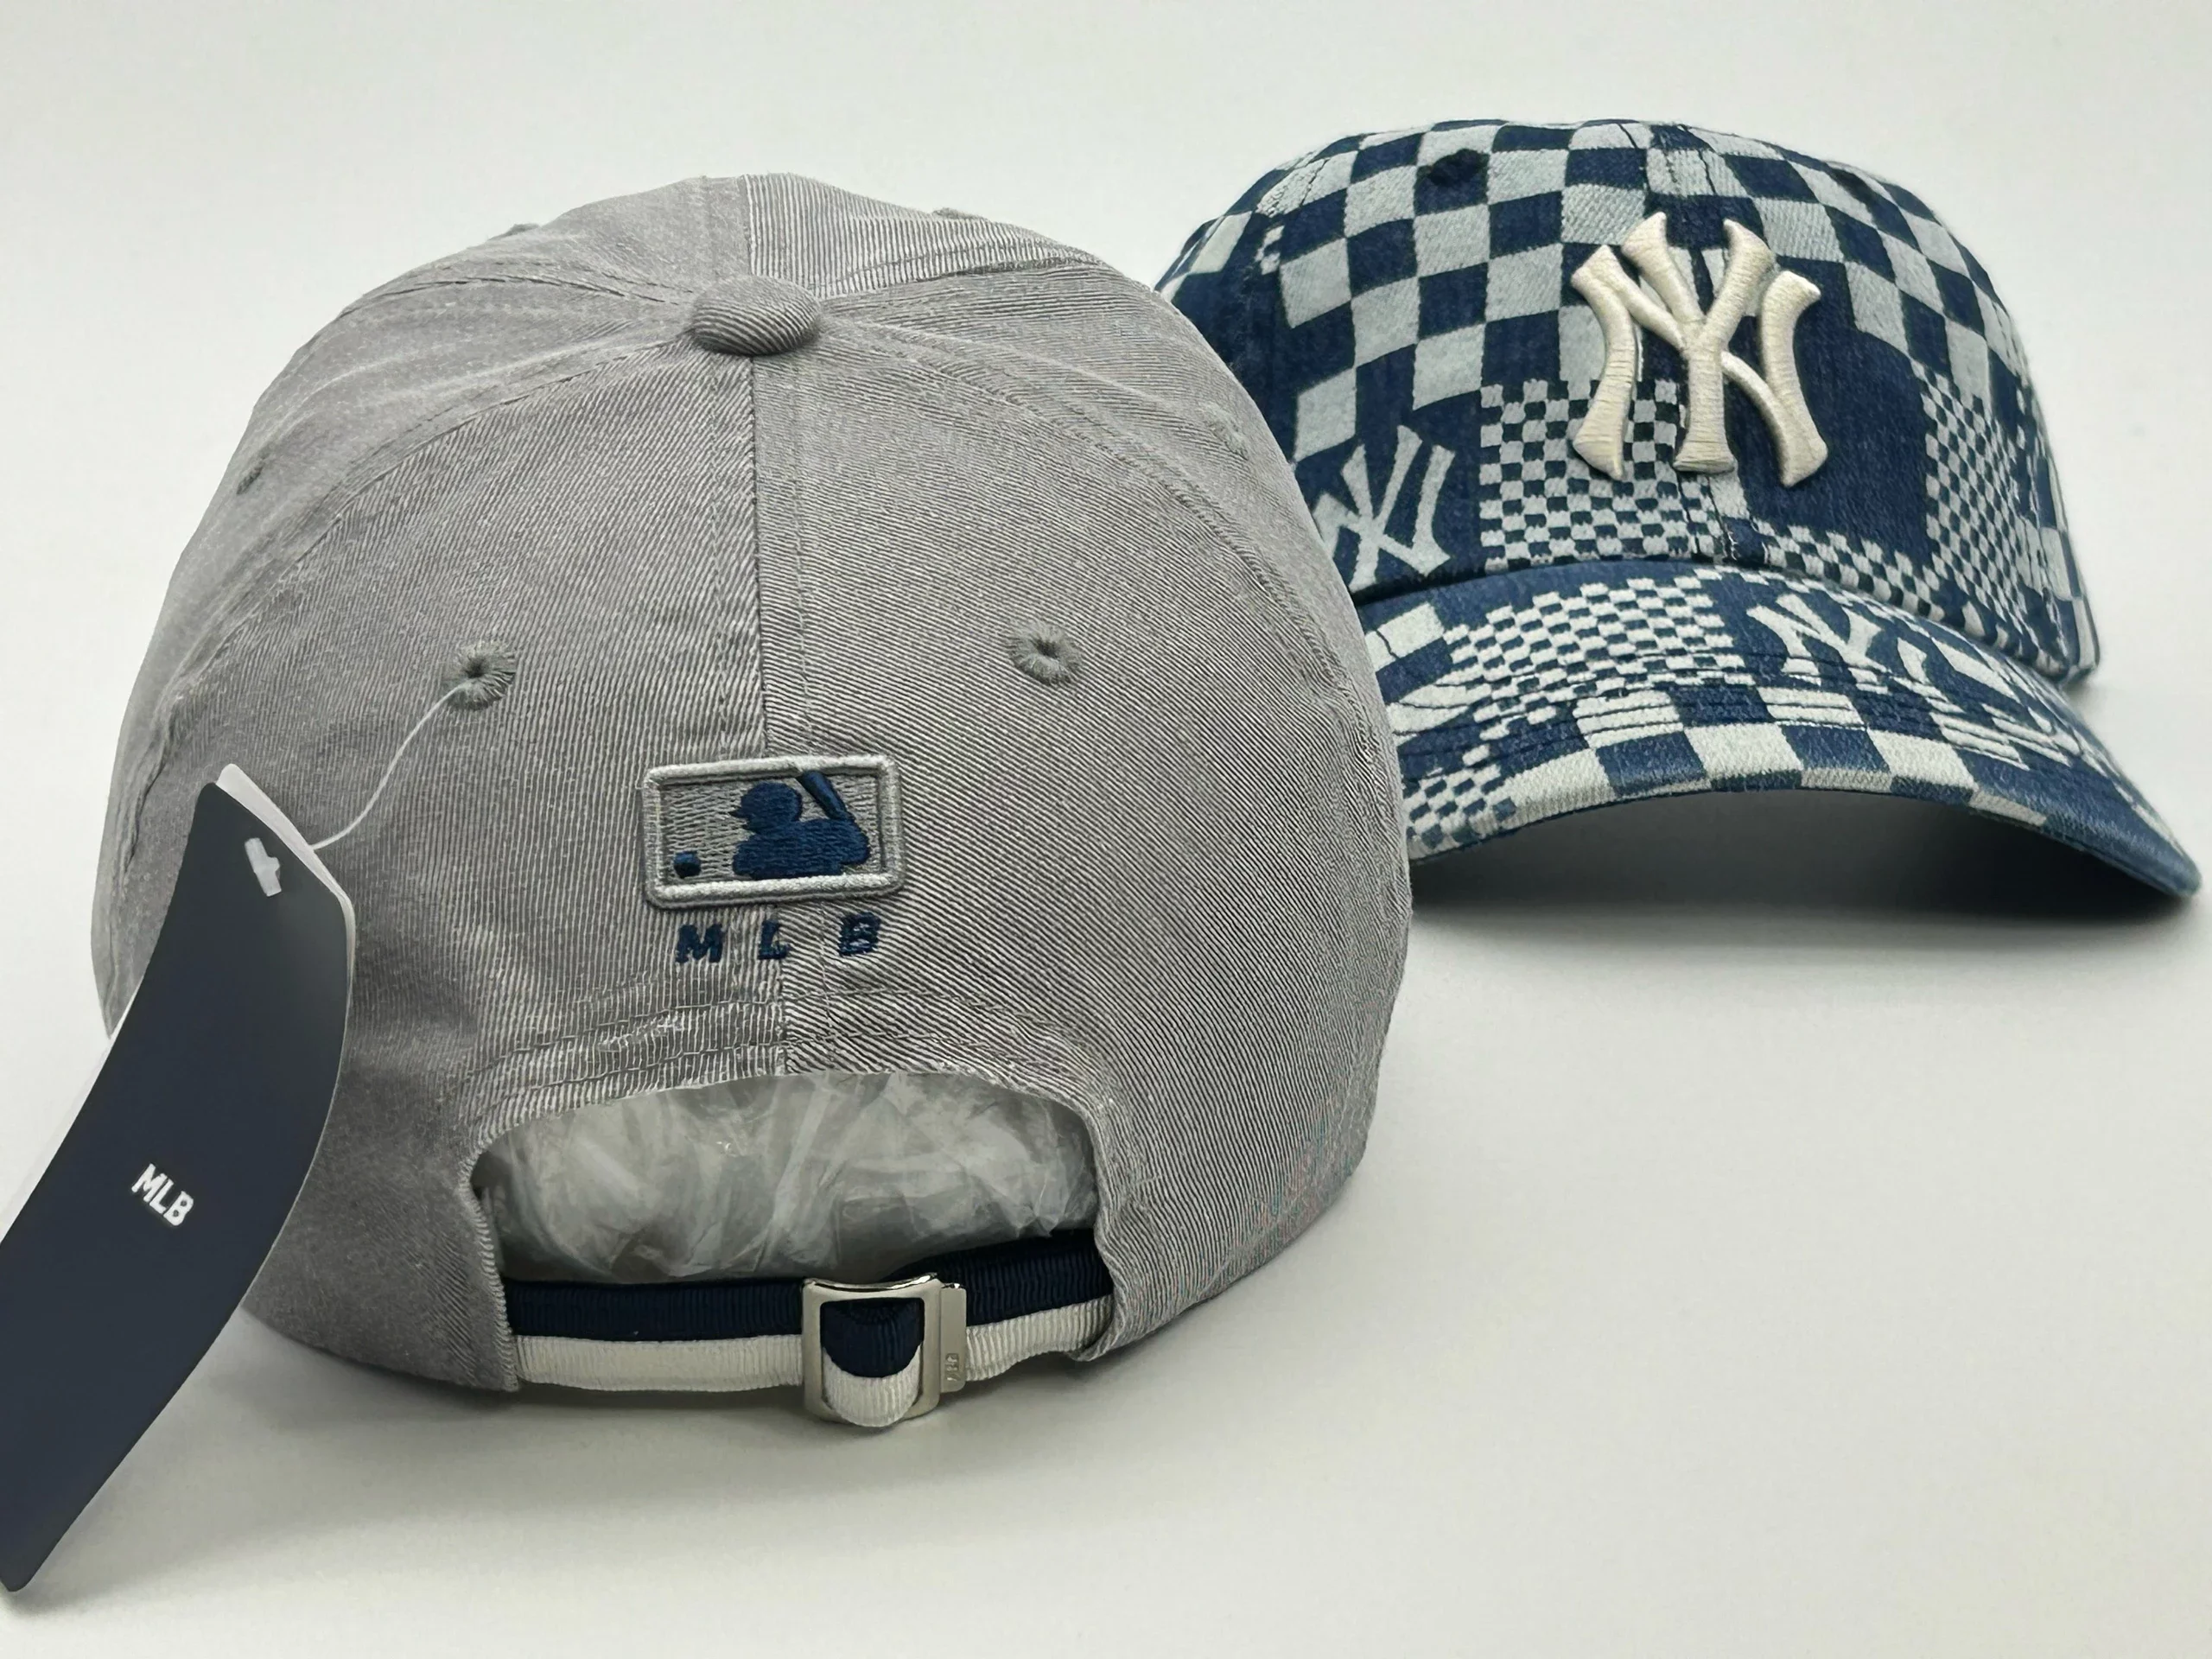 孤品正版MLB帽子春秋新款NY棒球帽潮流时尚YANKEES1903精美刺绣鸭舌帽中 